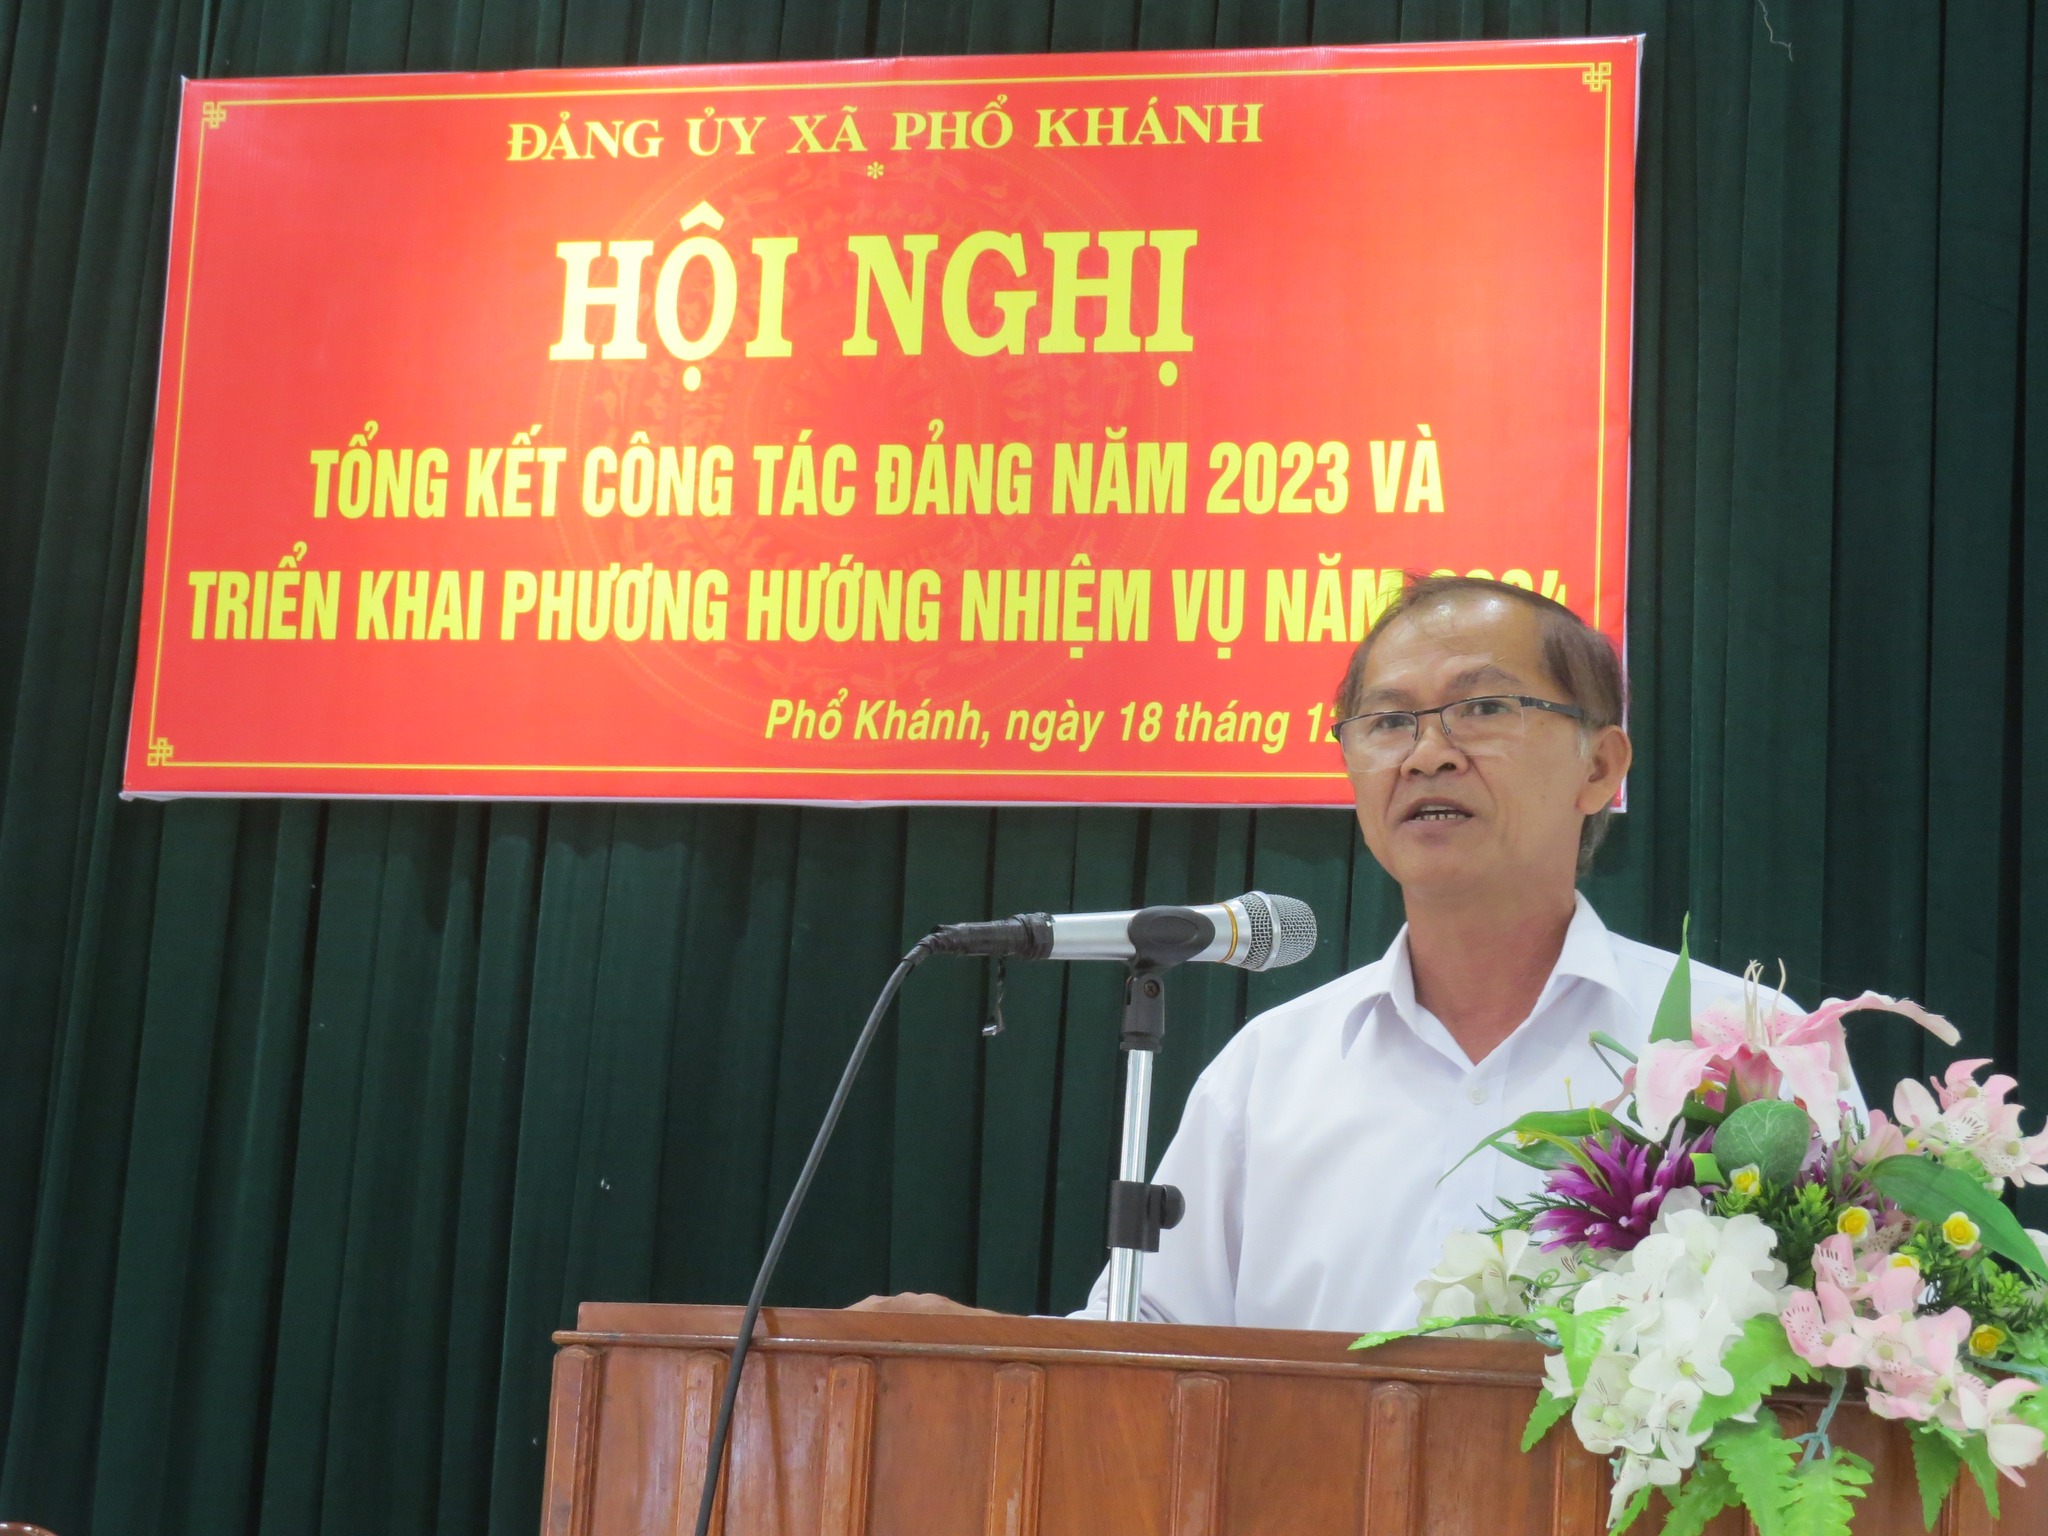 Đảng ủy xã Phổ Khánh tổng kết công tác năm 2023